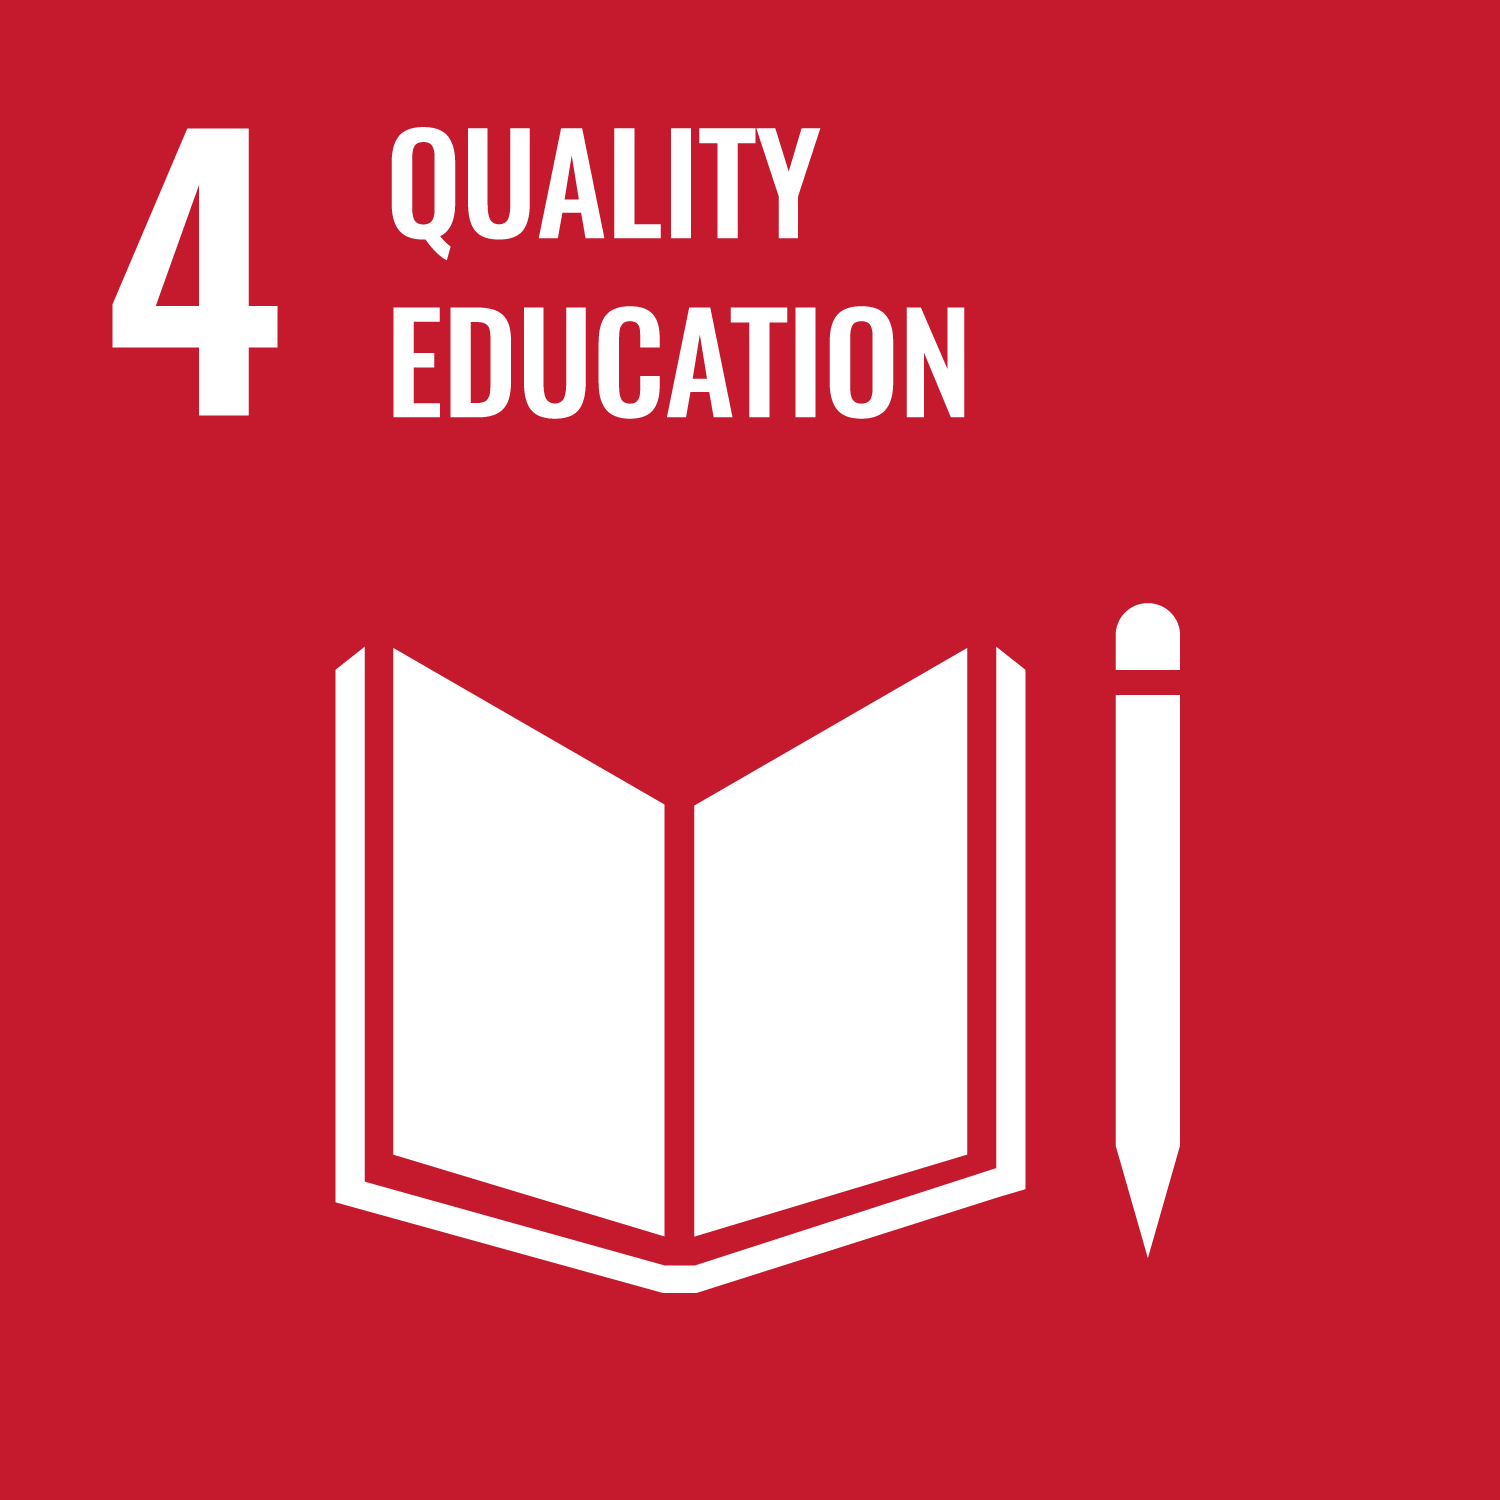 Bildung für alle – inklusive, gerechte und hochwertige Bildung gewährleisten und Möglichkeiten des lebenslangen Lernens für alle fördern.